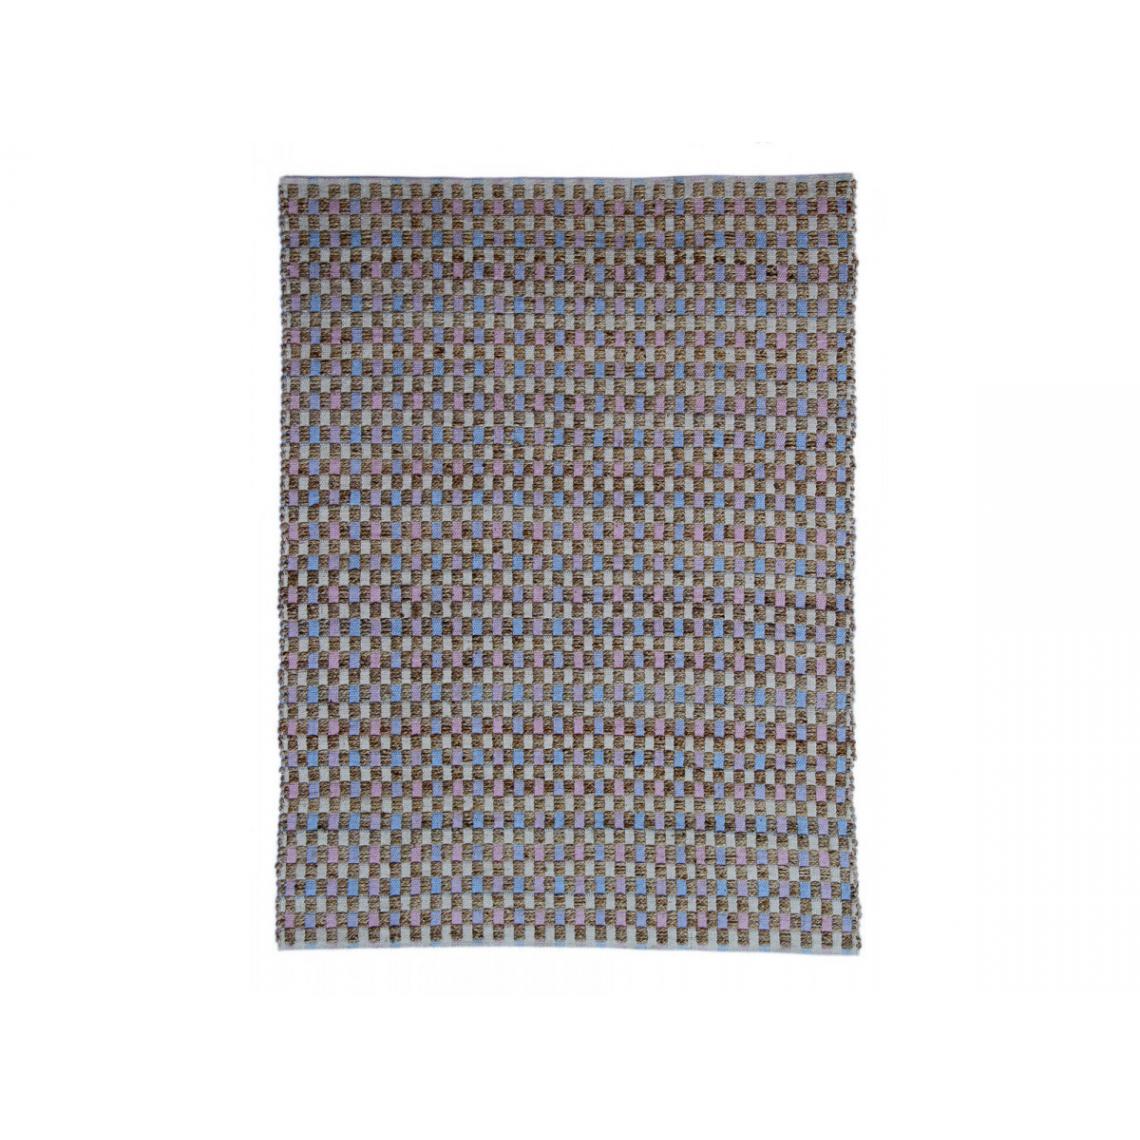 Bobochic - BOBOCHIC Tapis d'extérieur MALEE Naturel / Rose / Bleu 80cm x 150cm - Tapis